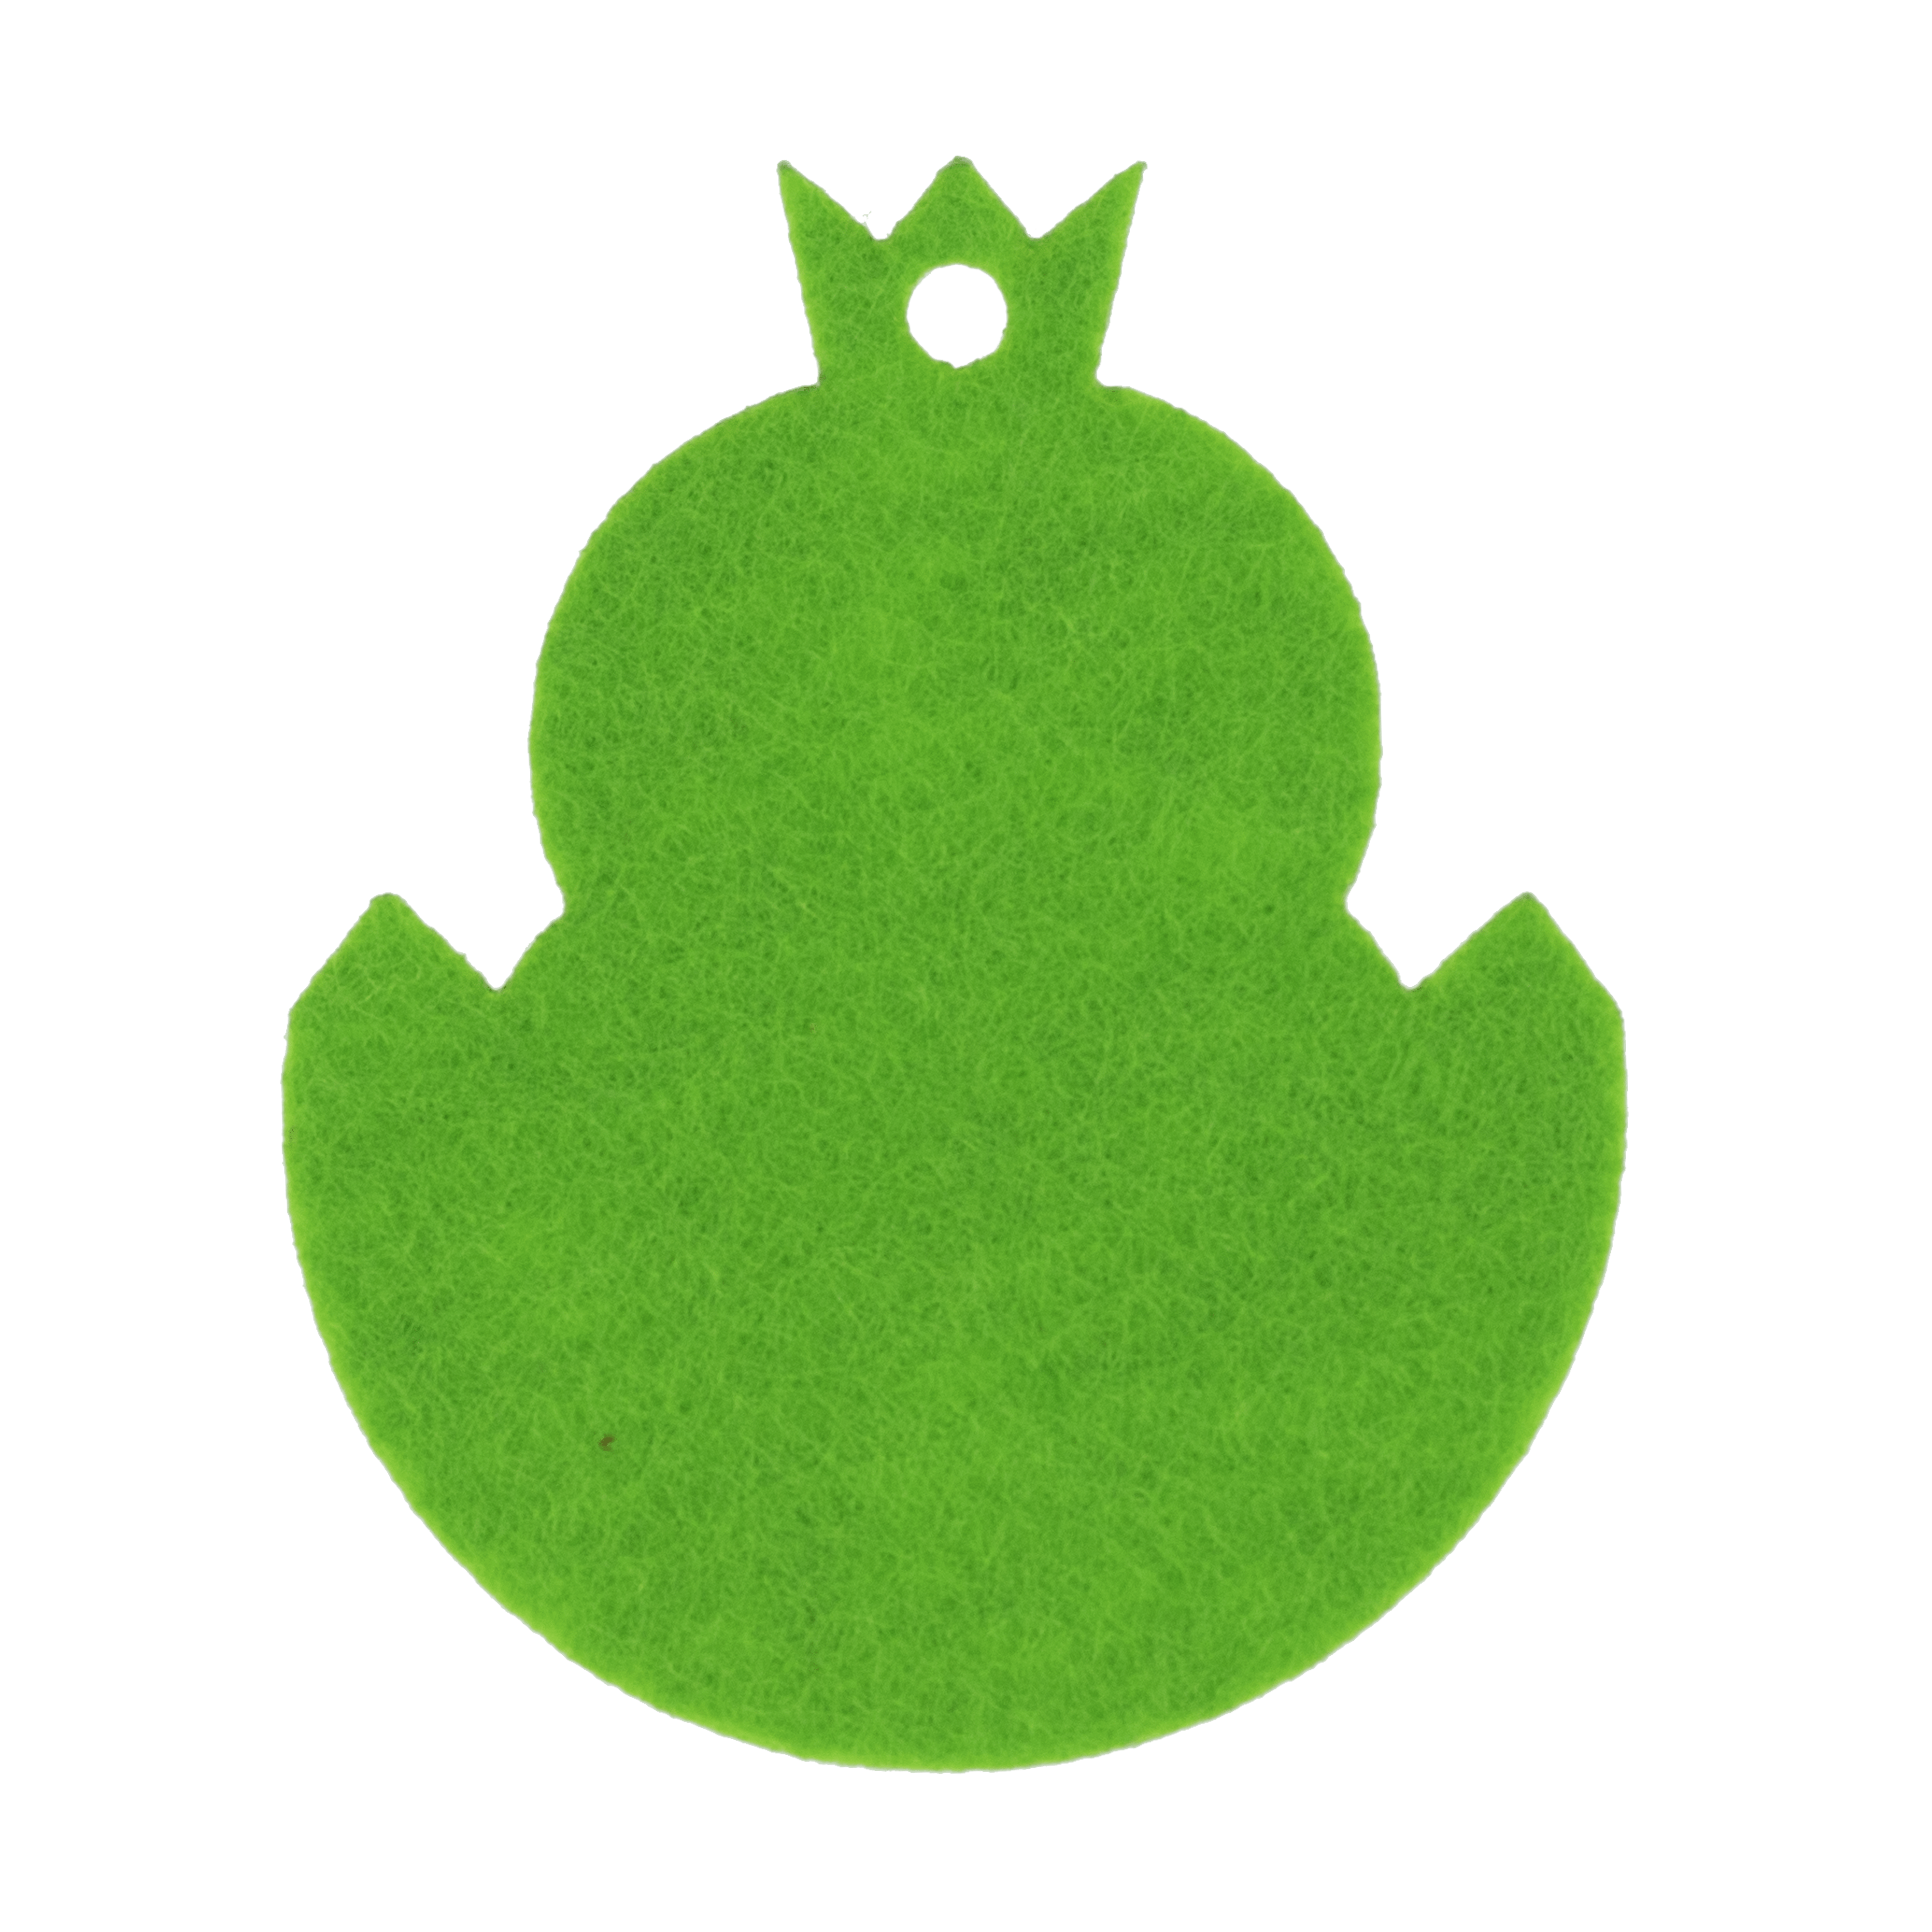 paaskuiken-vilt-groen